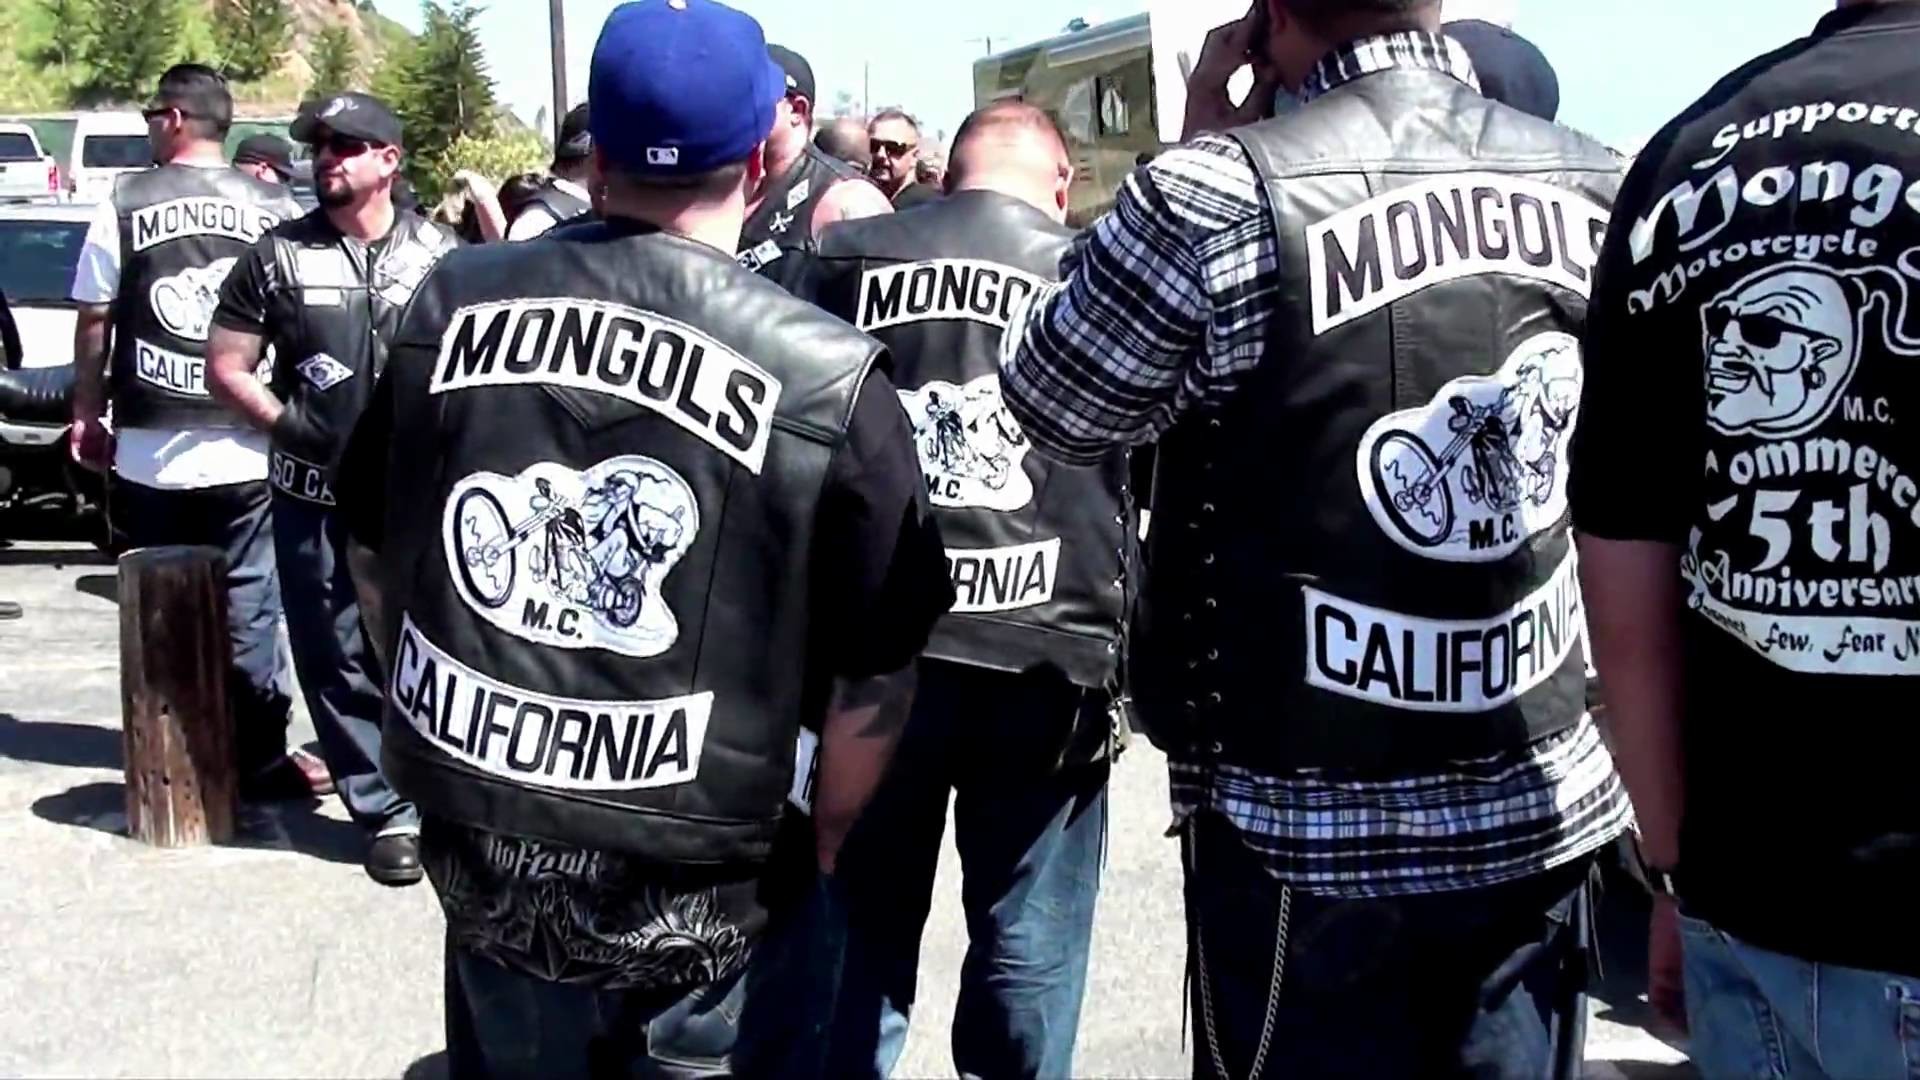 1920x1080 Mongols MC - Riding